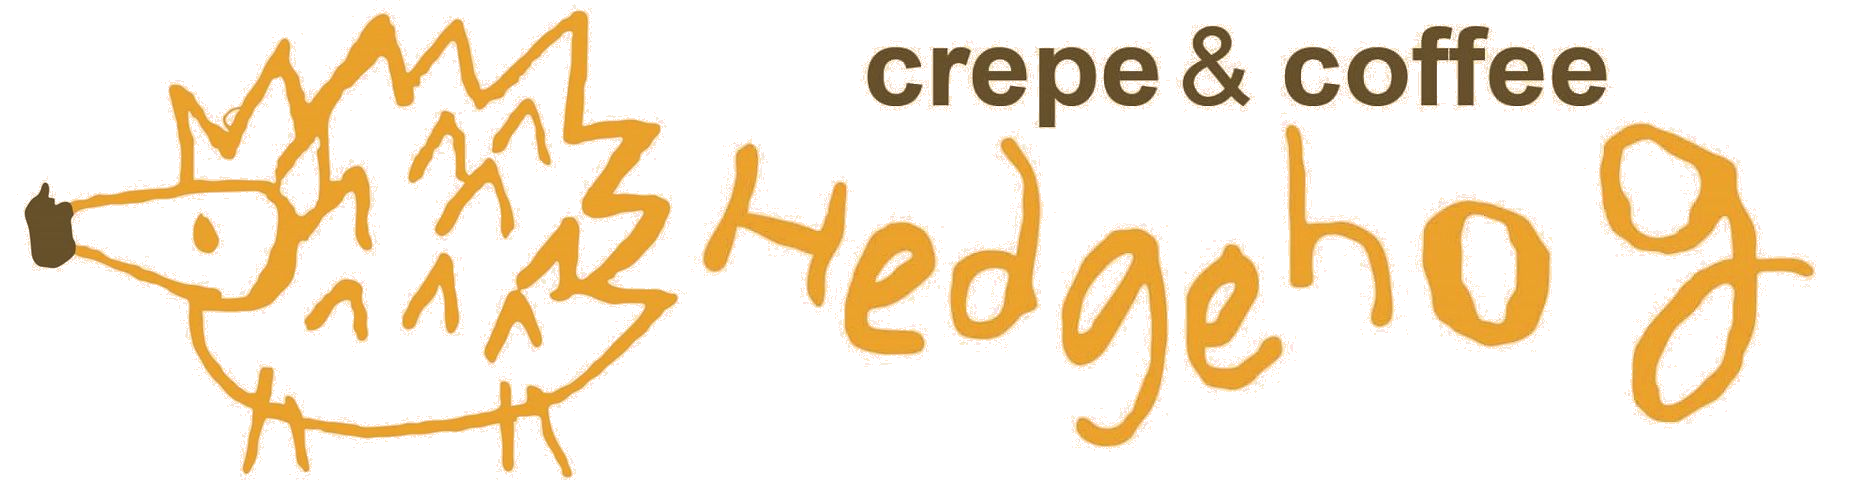 クレープの移動販売と雑貨販売のお店 | Crepe&coffee Hedgehog（ヘッジホッグ） 埼玉県エリアを中心に、フレンチバスのようなキッチンカーでモチモチのクレープを移動販売する【Crepe&coffee Hedgehog】の公式ホームページです。出店情報の発信だけでなく、マグカップ・トートバッグ・缶バッジなどの当店オリジナルグッズや、店主が自らセレクトしたお気に入りのアメリカン雑貨なども販売しております。